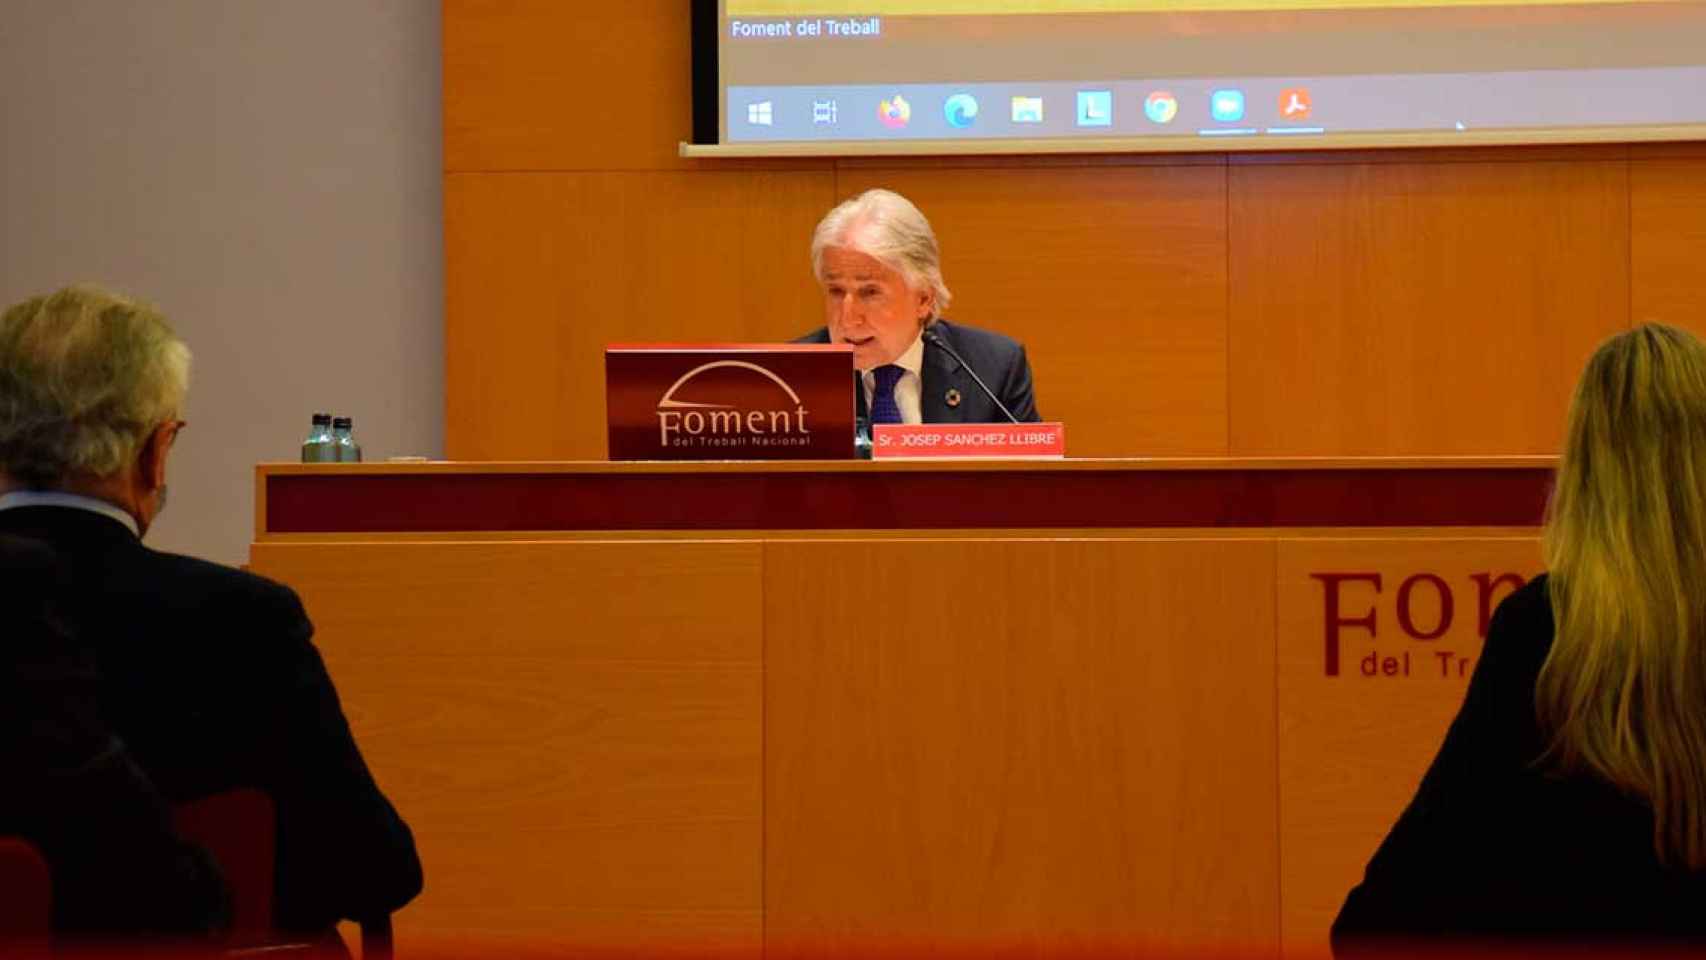 El presidente de Foment del Treball, Josep Sánchez Llibre / FOMENT